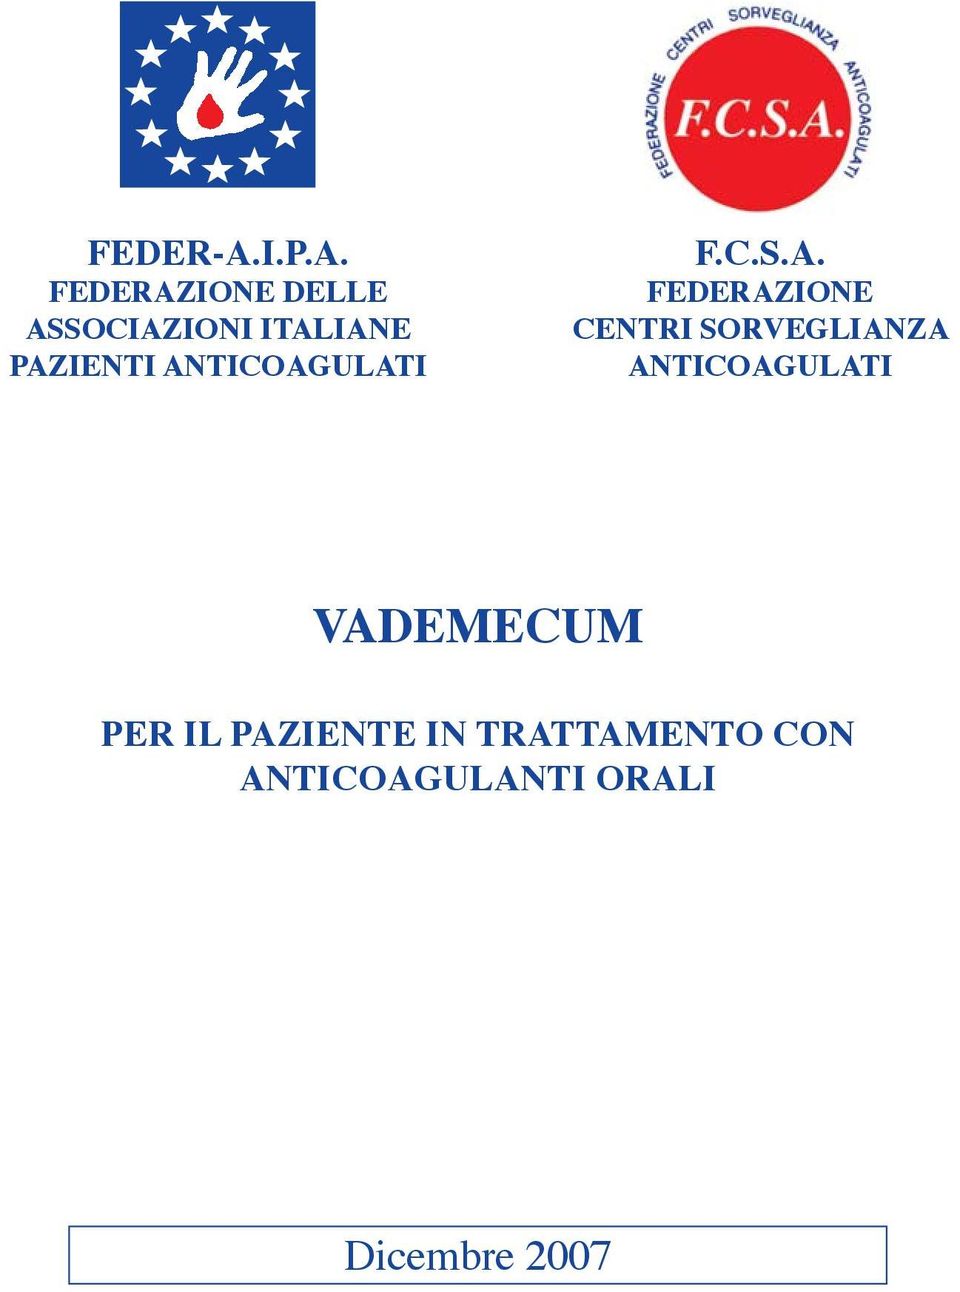 FEDERAZIONE DELLE ASSOCIAZIONI ITALIANE PAZIENTI